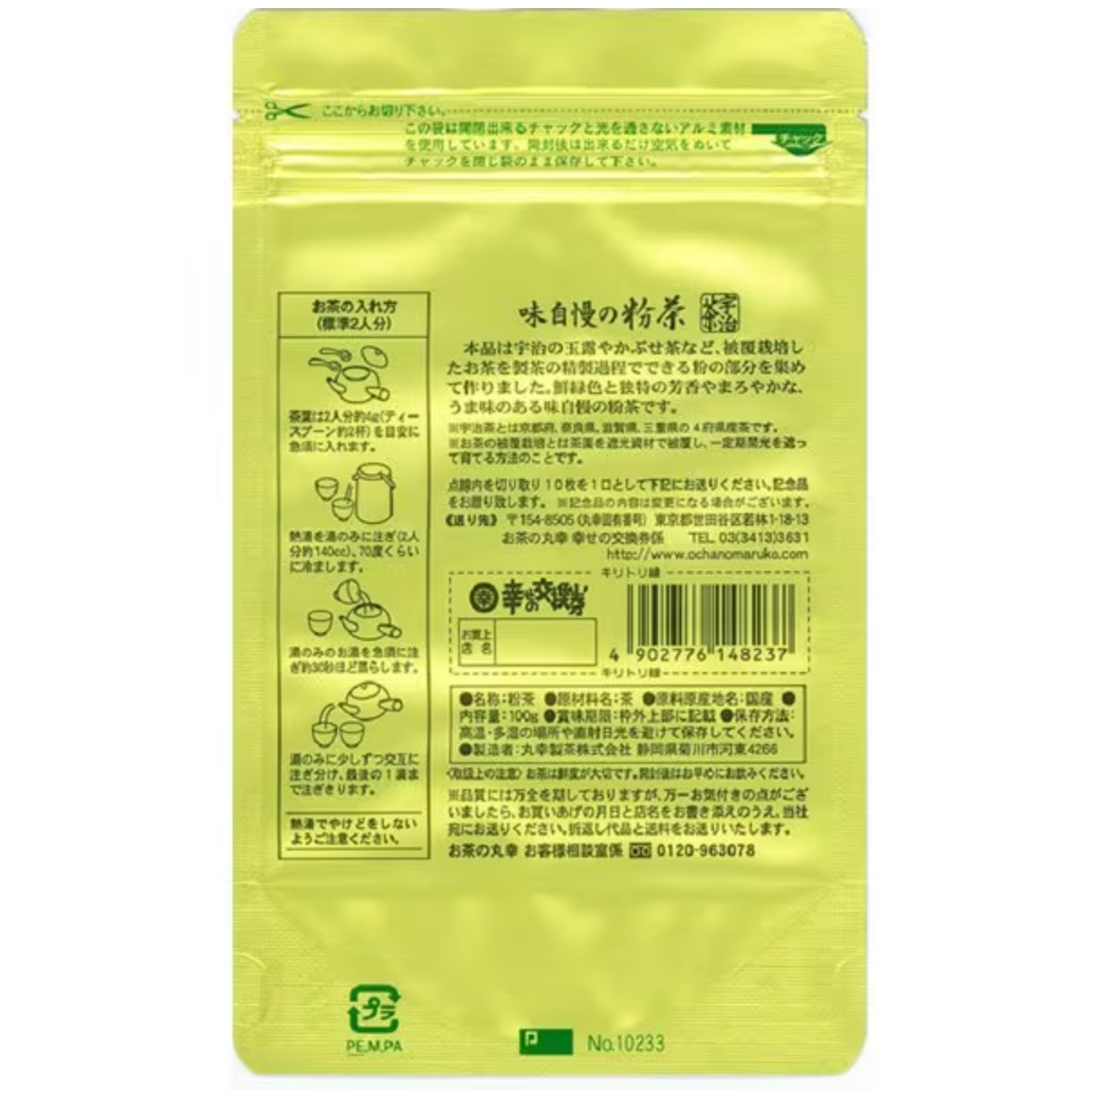 Ochanomaruko signature powdered tea 100g